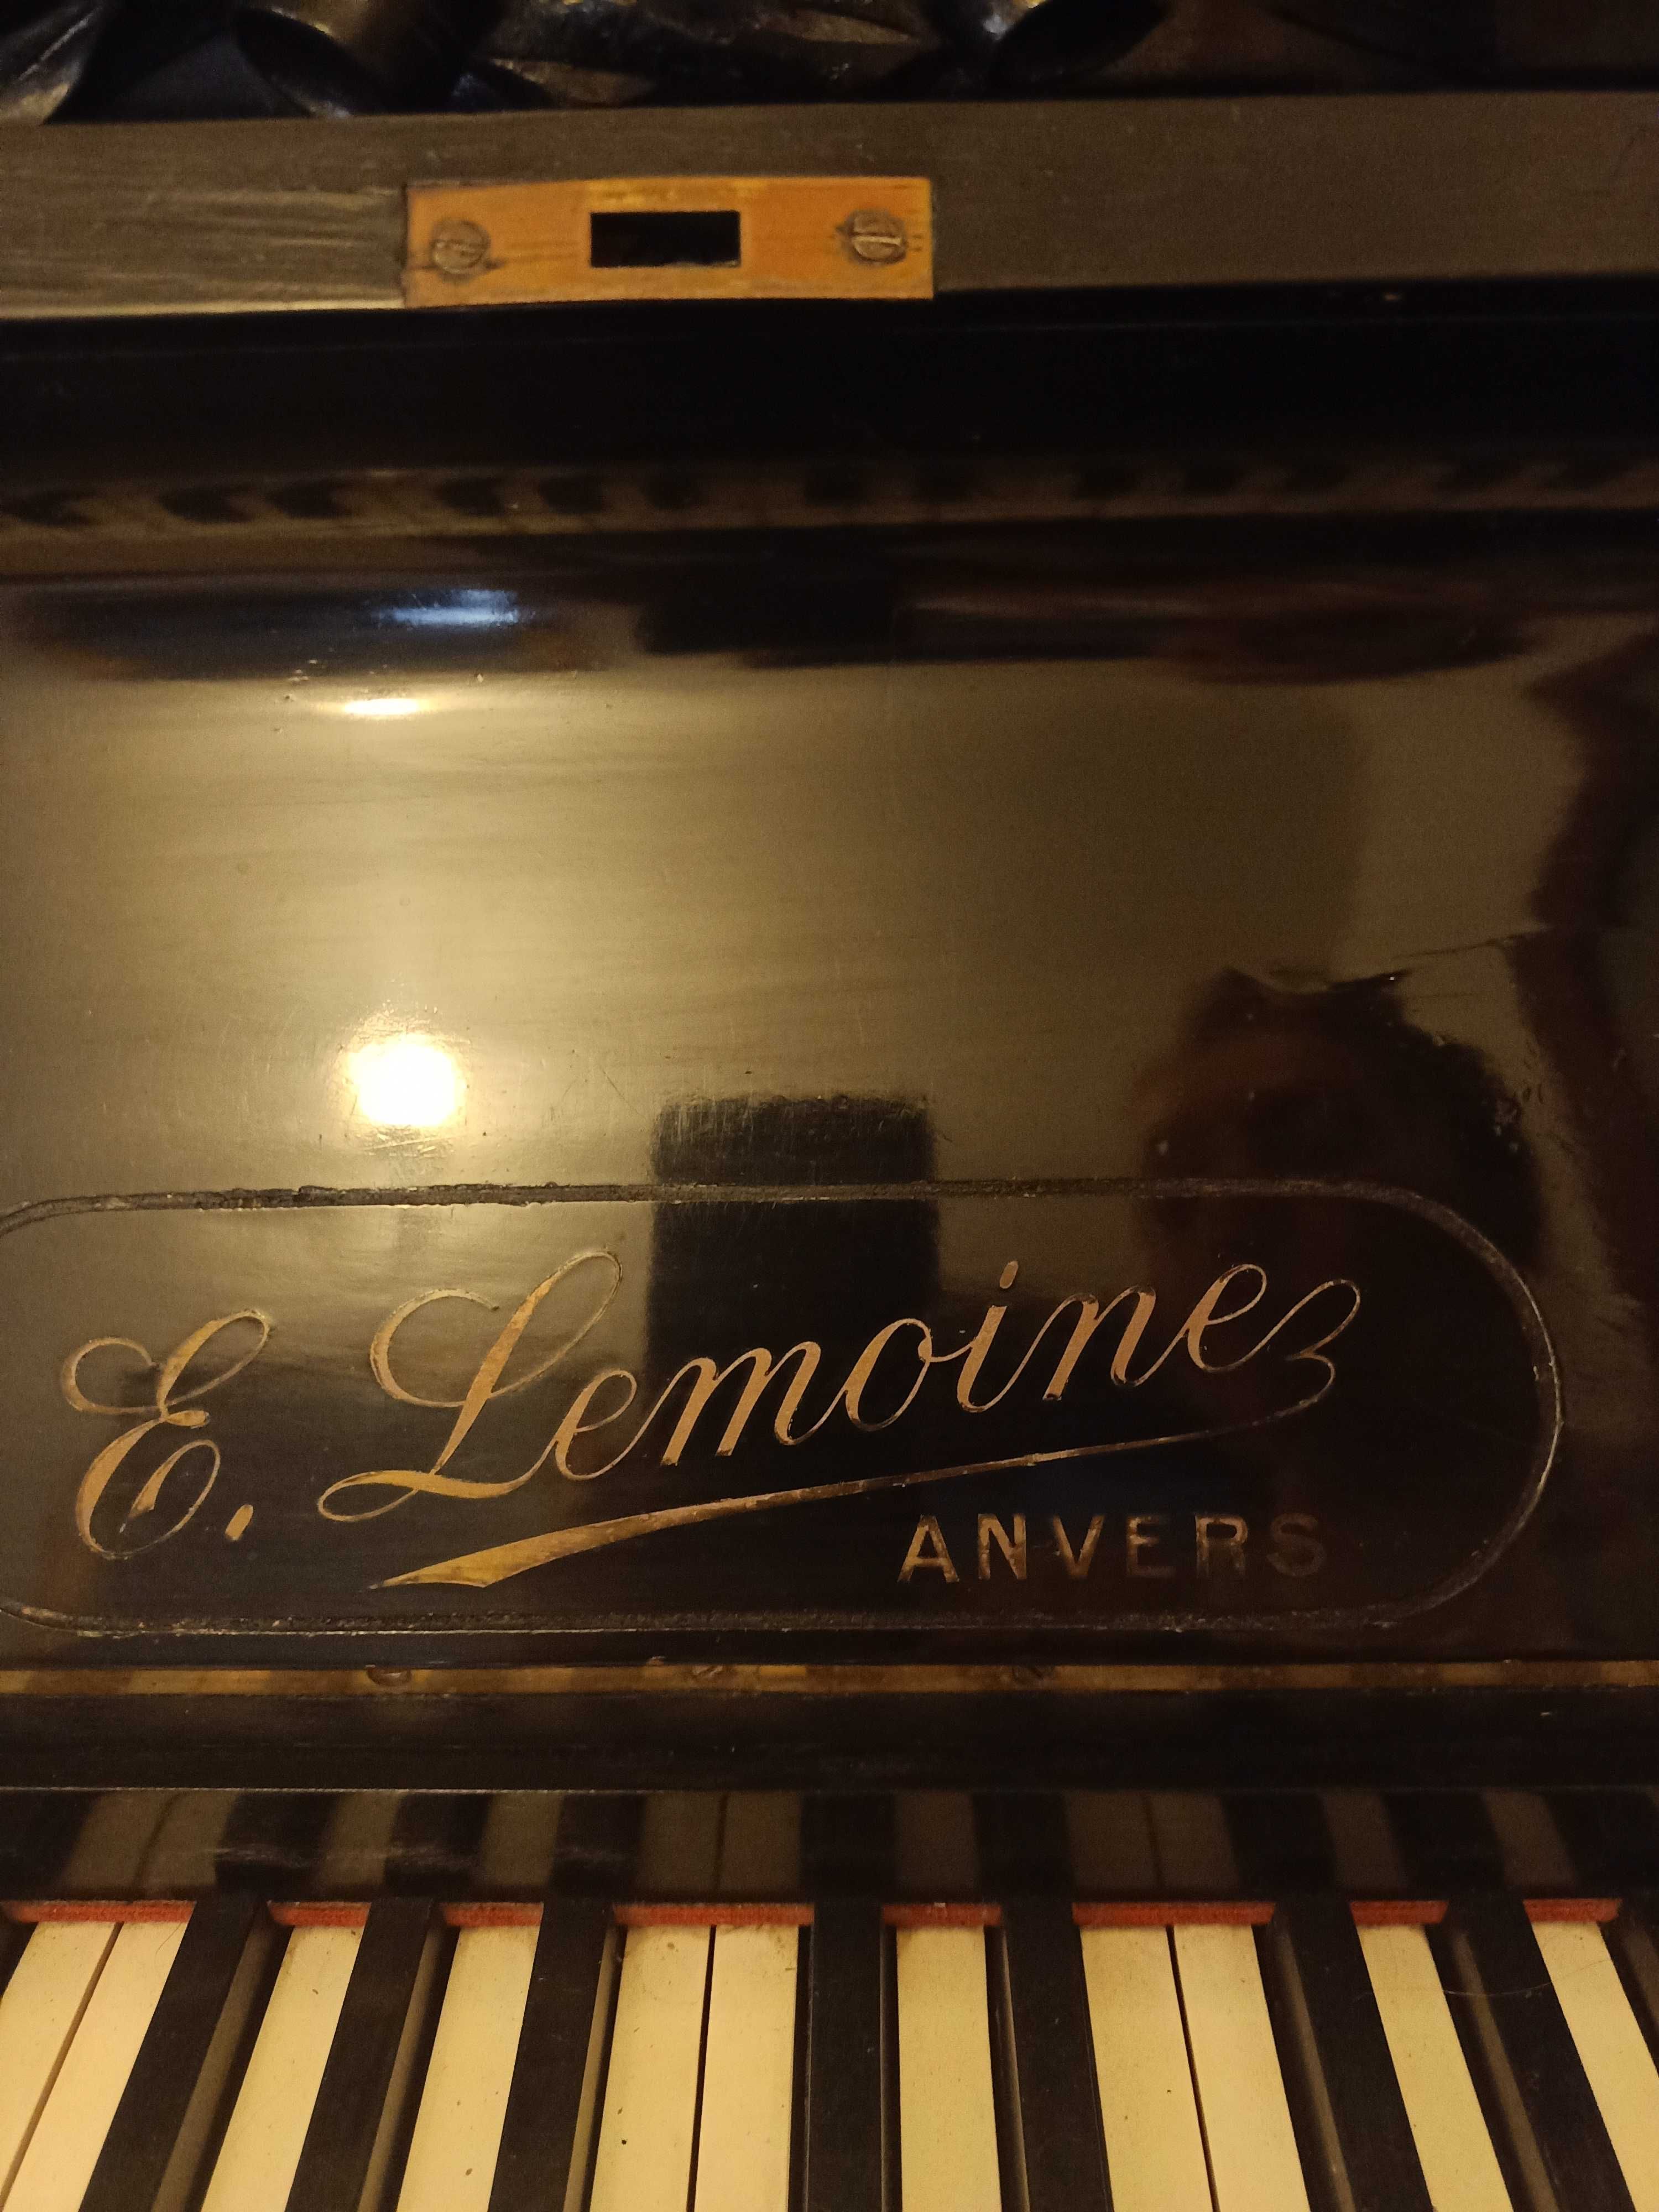 Pianino E.Lemoinez anvers